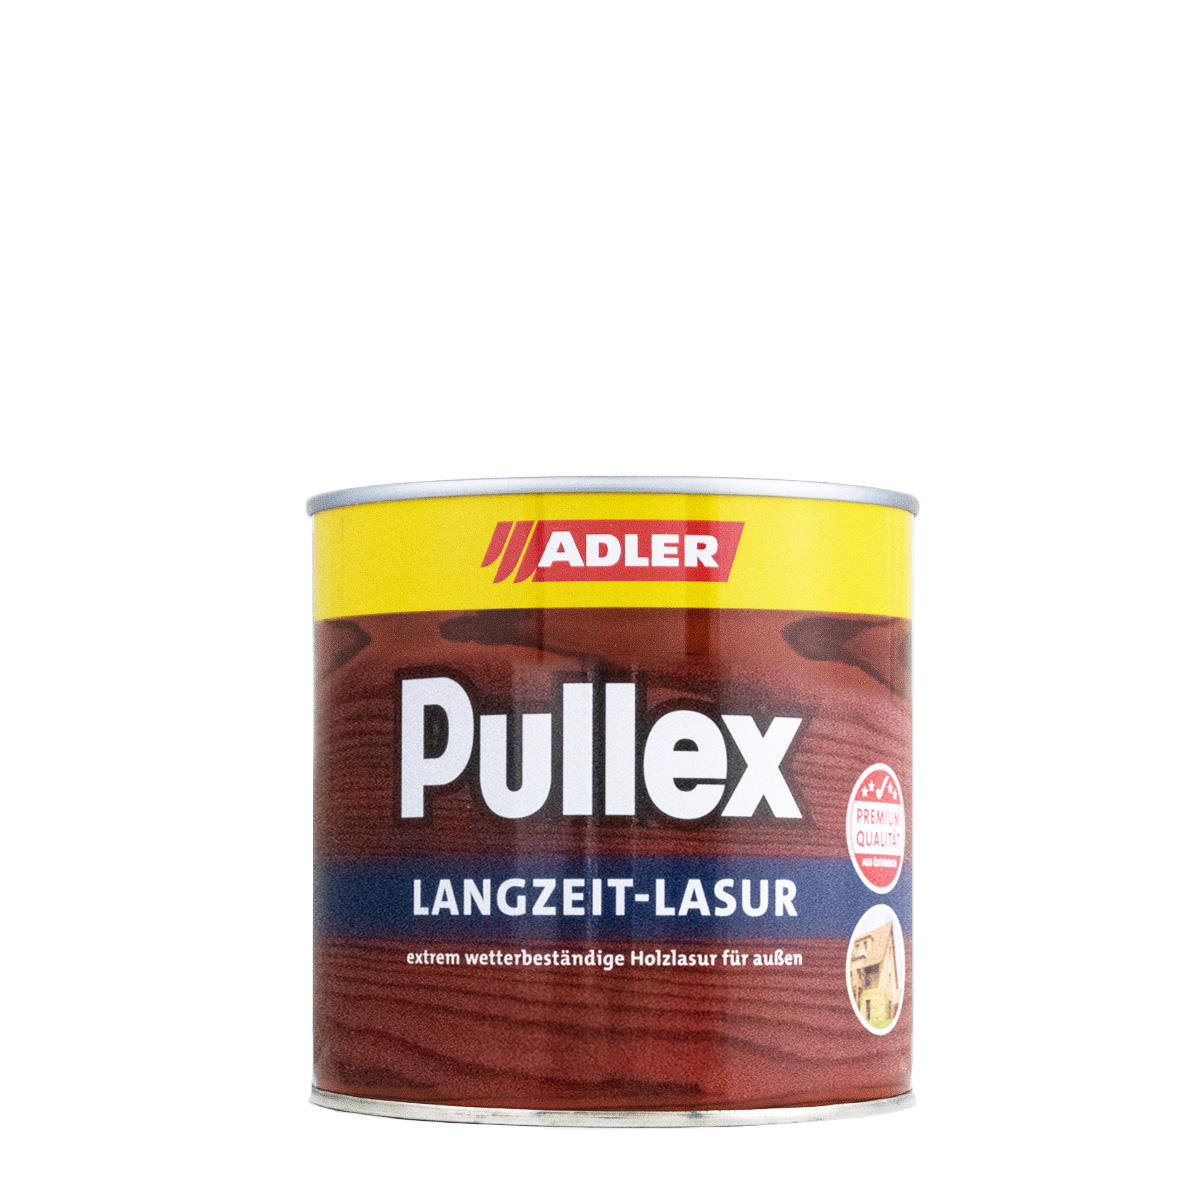 adler_pullex_langzeitlasur_750ml_gross